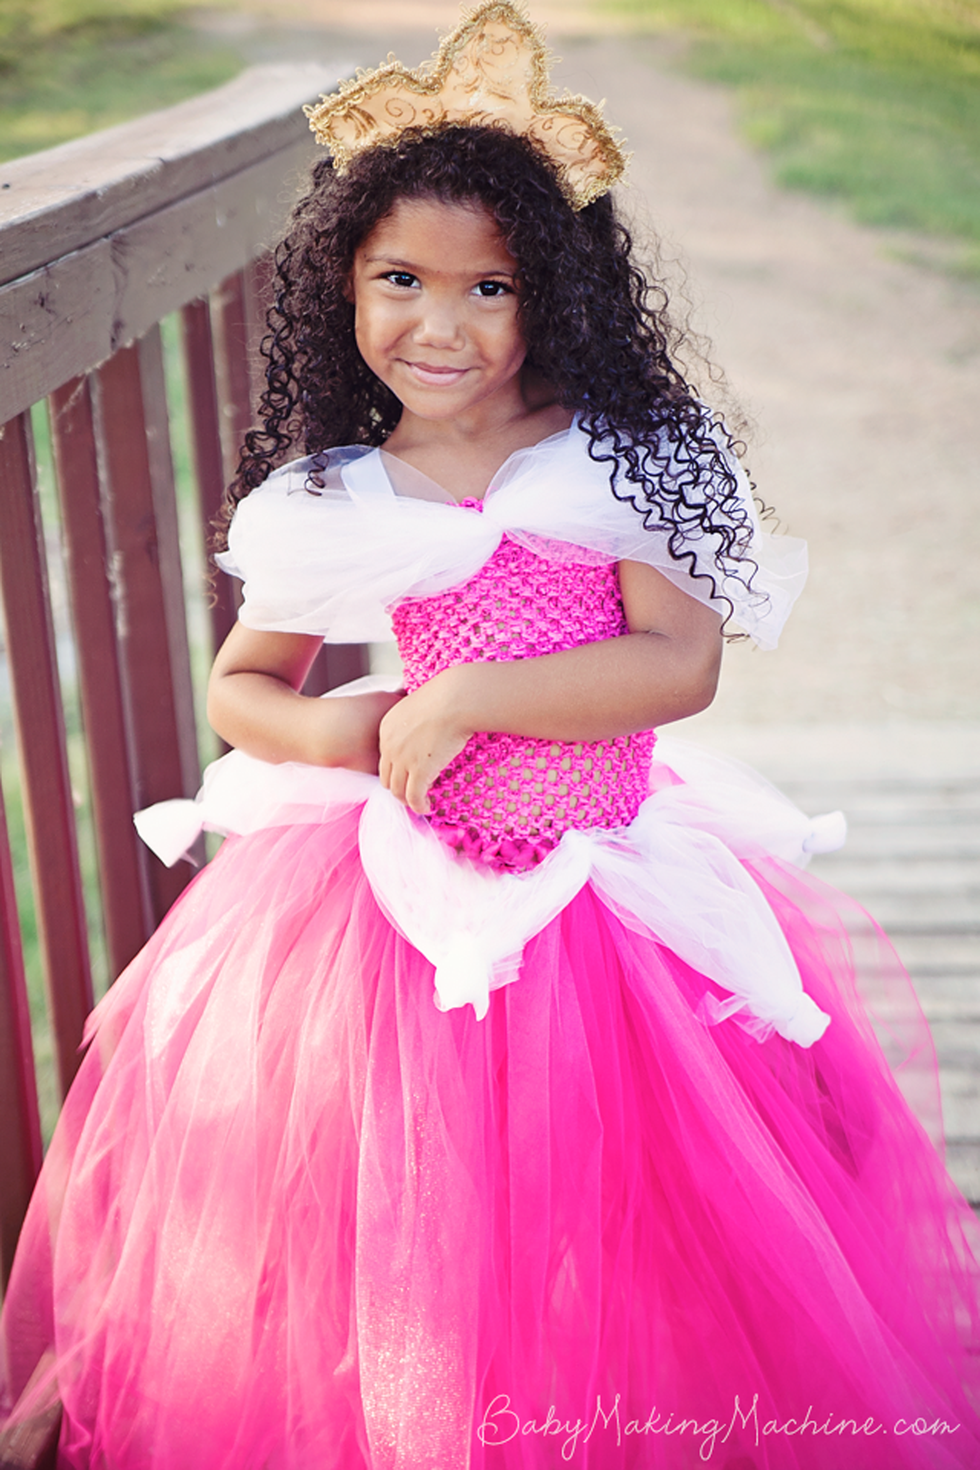 38 DIY Disney Princess Costumes 2021 - Homemade Princess Dresses